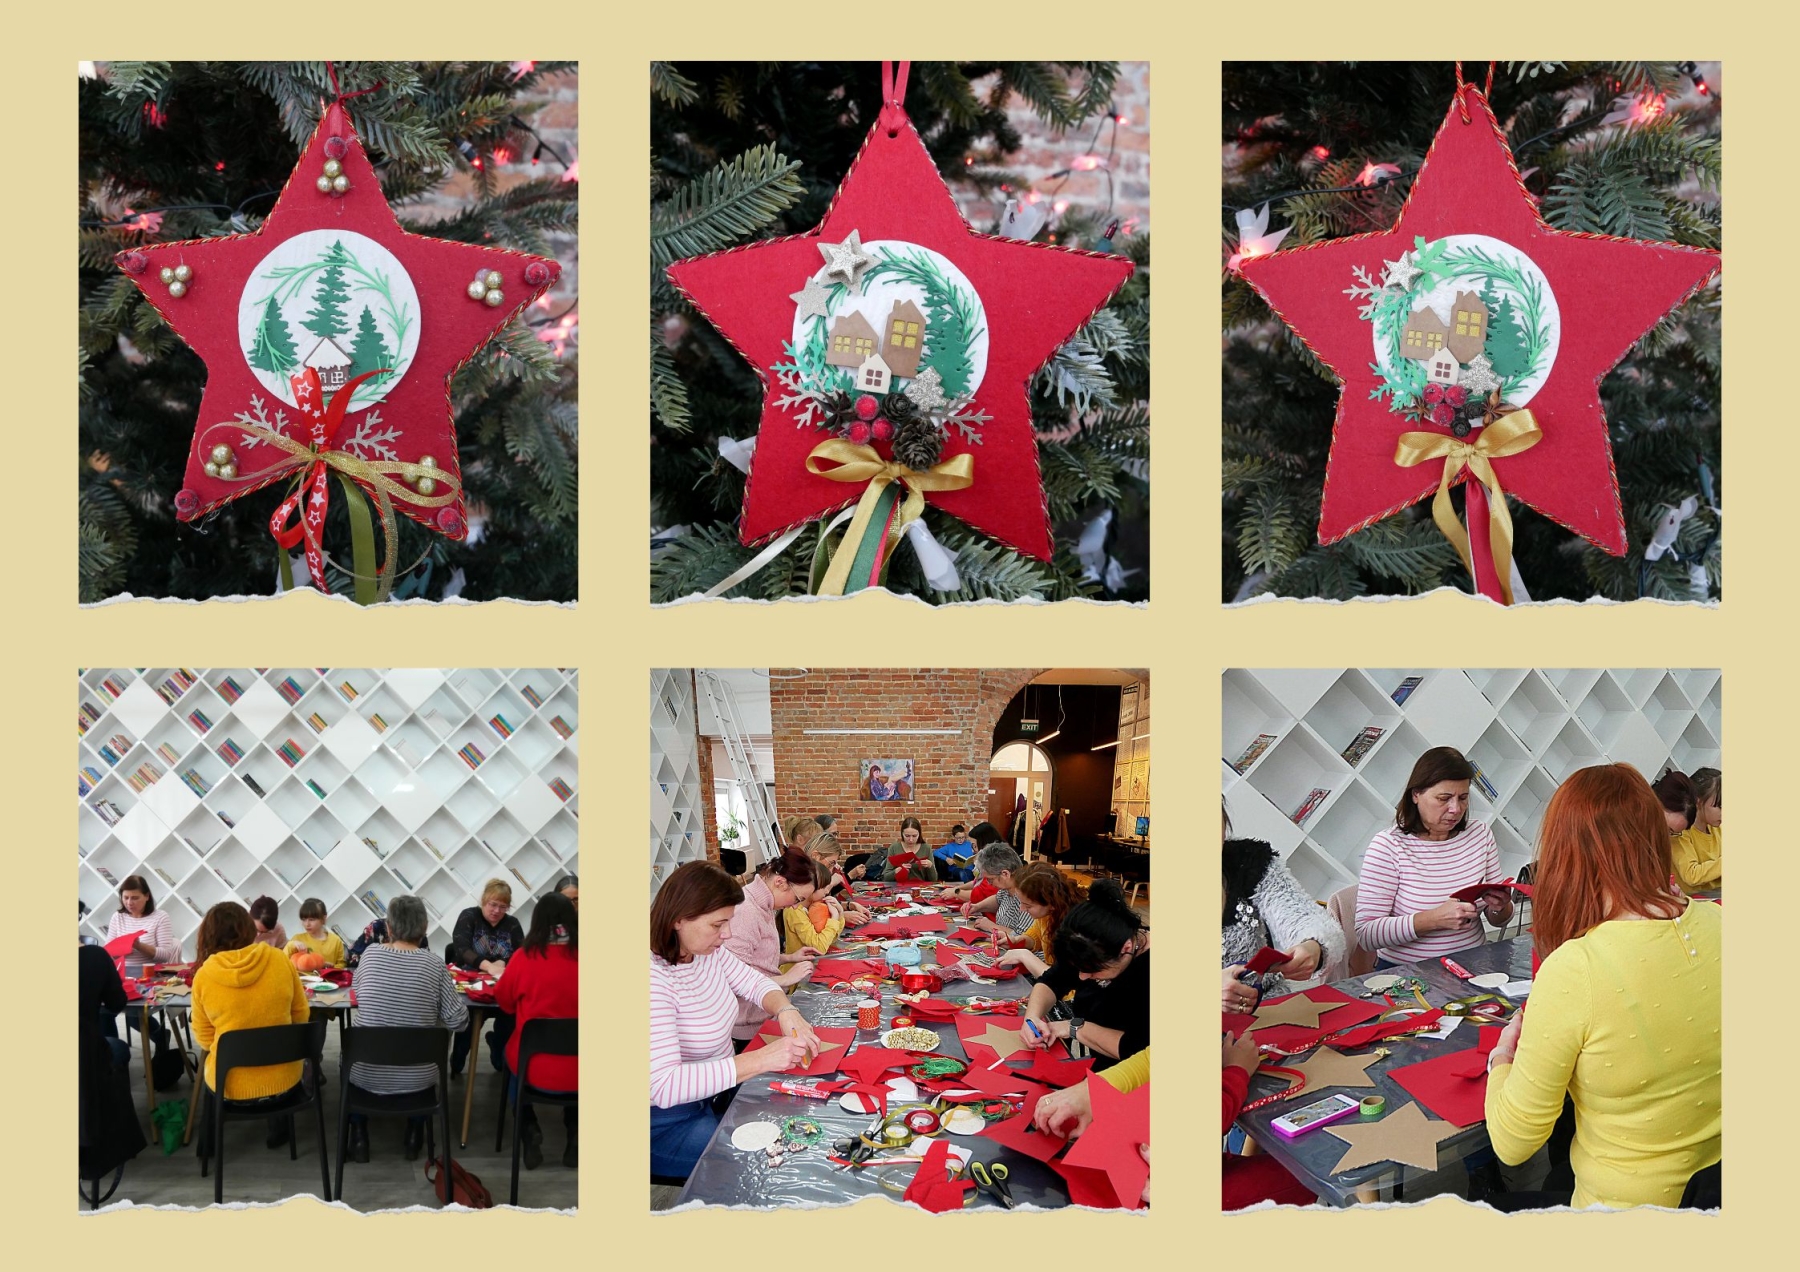 Świąteczne gwiazdy wykonane przez uczestniczki warsztatów i panie tworzące świąteczna dekorację